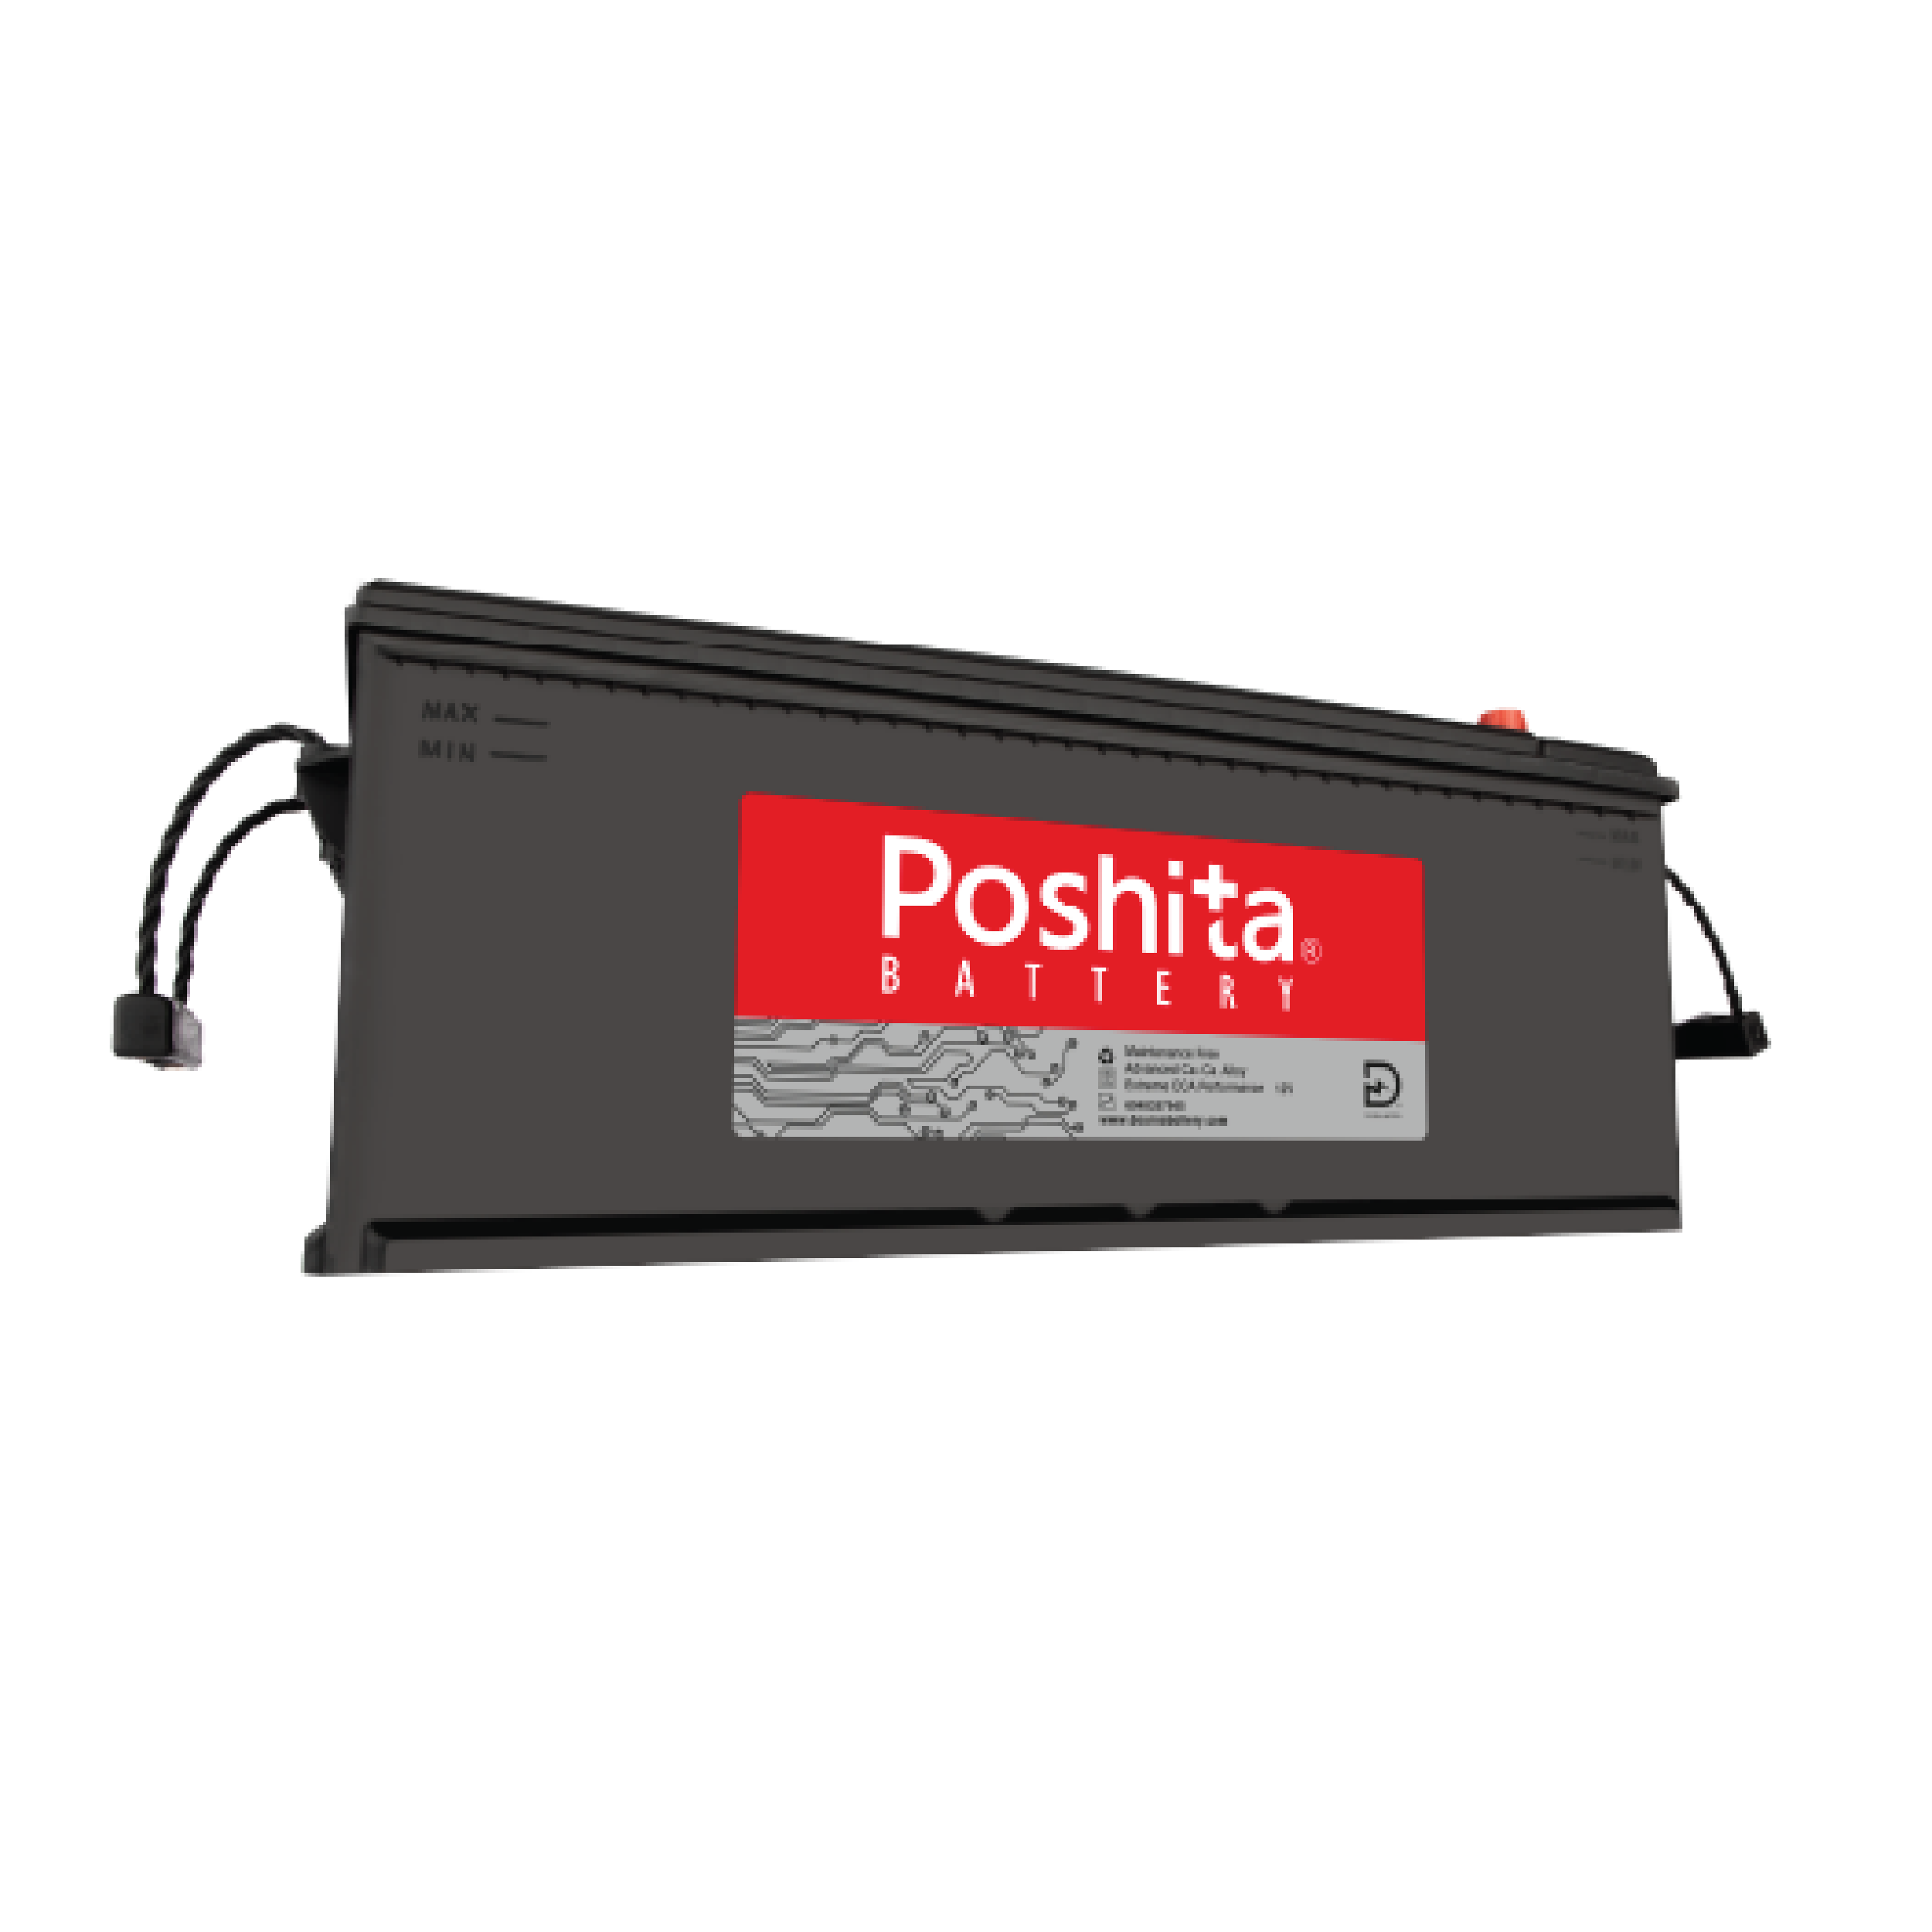 Poshita Capacity 220AH Type C Battery